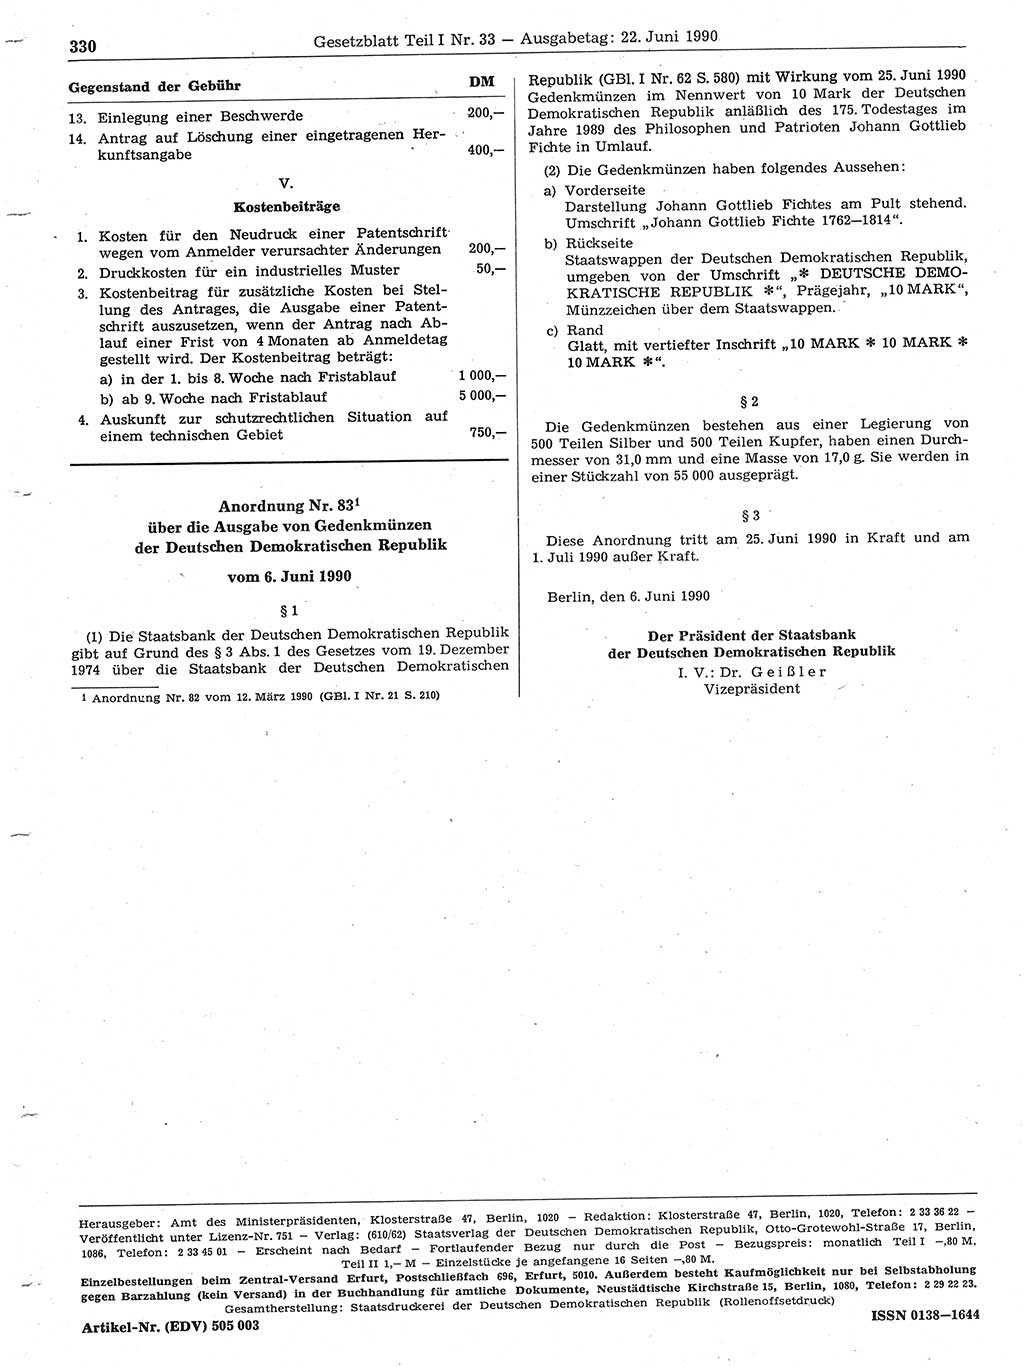 Gesetzblatt (GBl.) der Deutschen Demokratischen Republik (DDR) Teil Ⅰ 1990, Seite 330 (GBl. DDR Ⅰ 1990, S. 330)